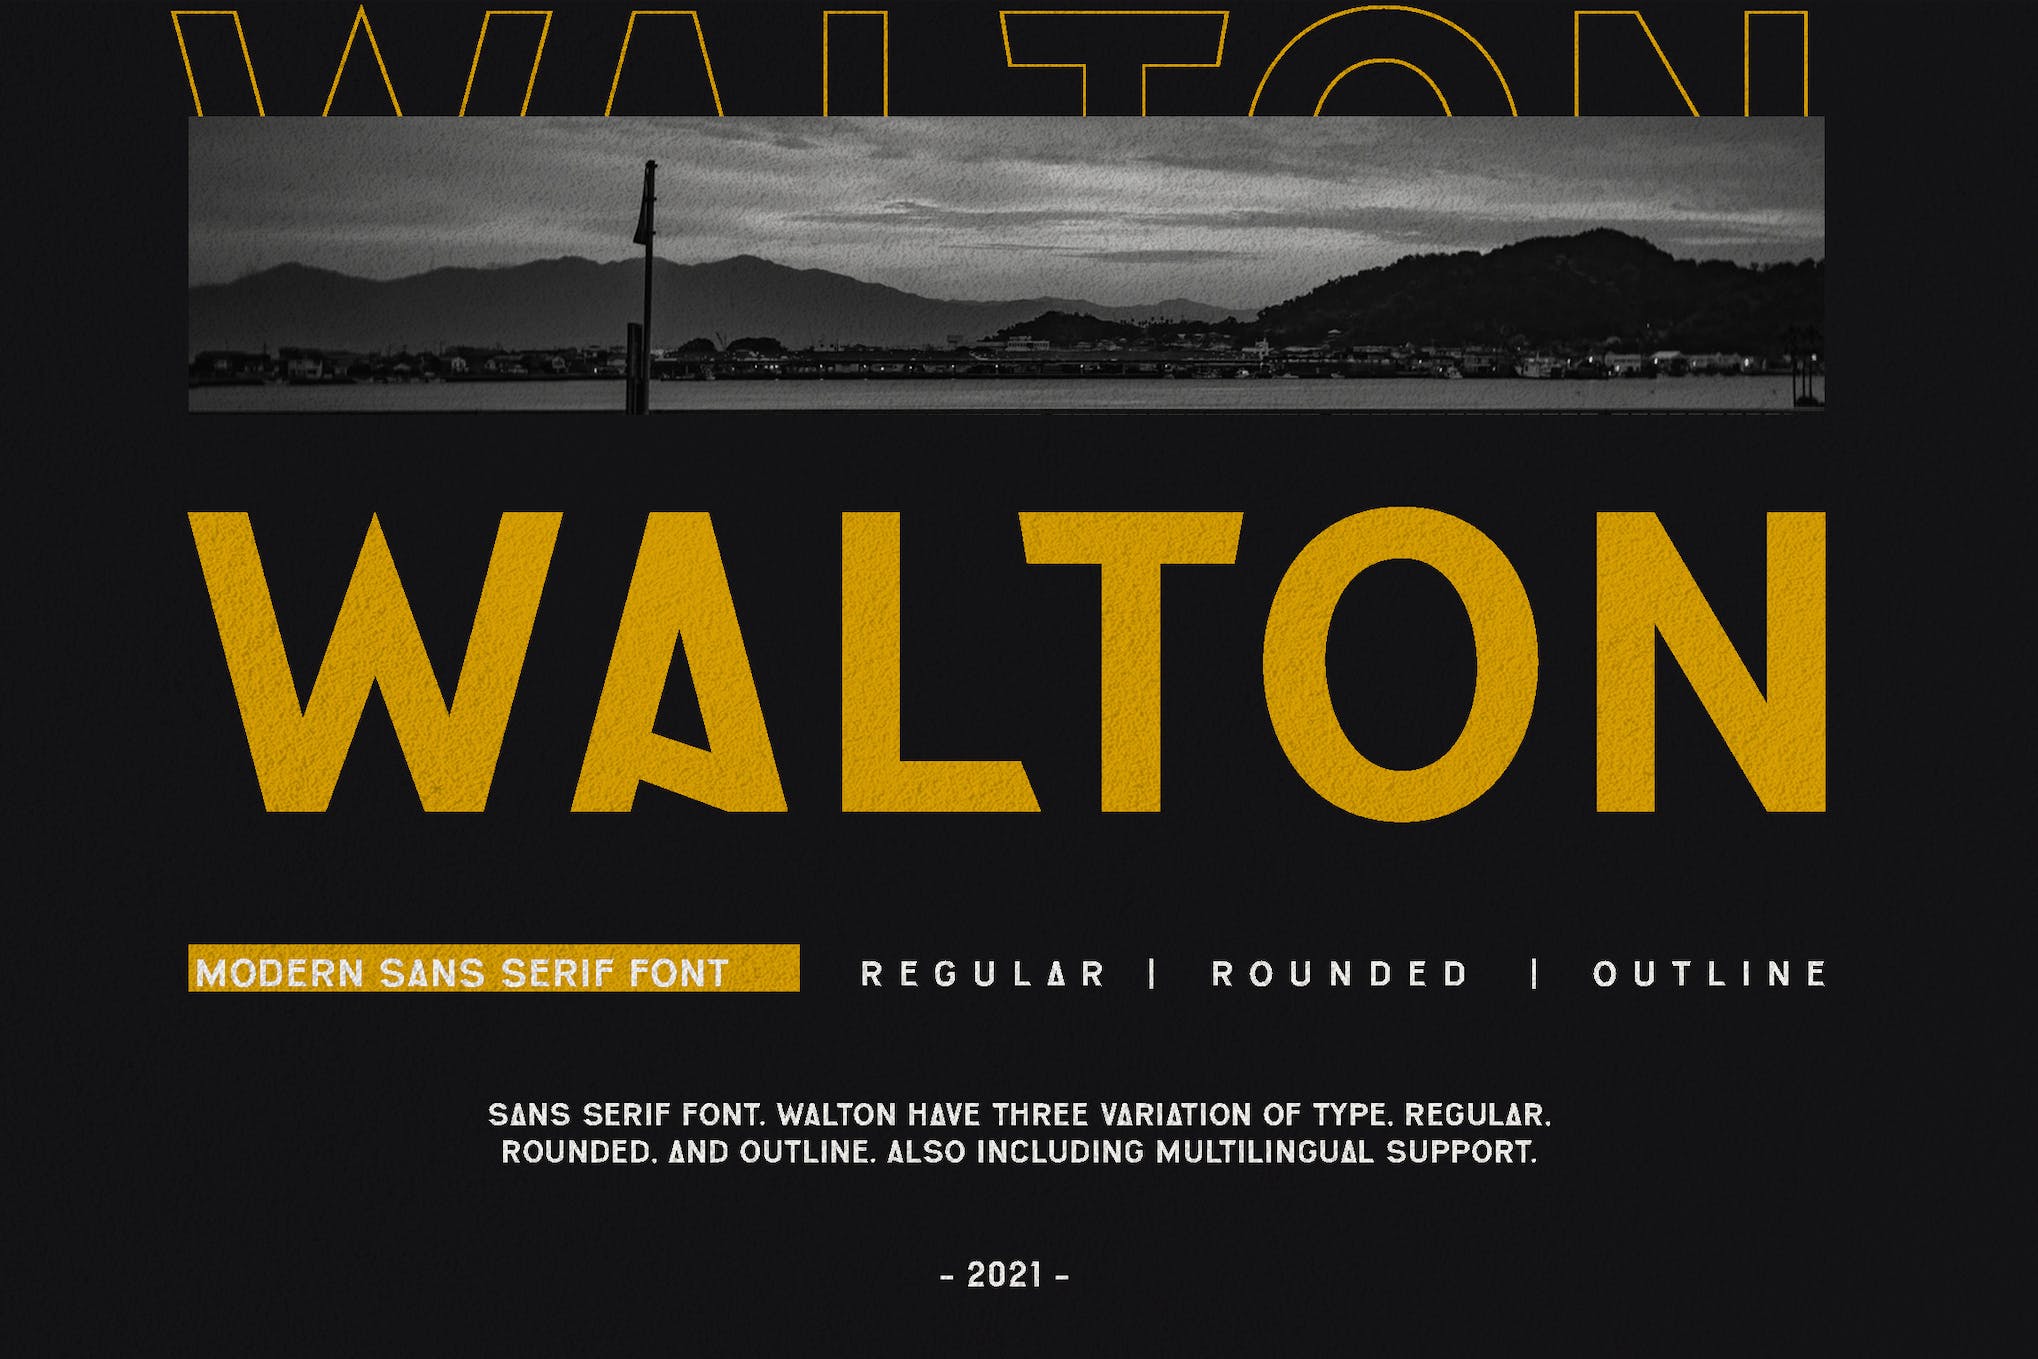 WALTON - Font Pencitraan Merek Sinematik